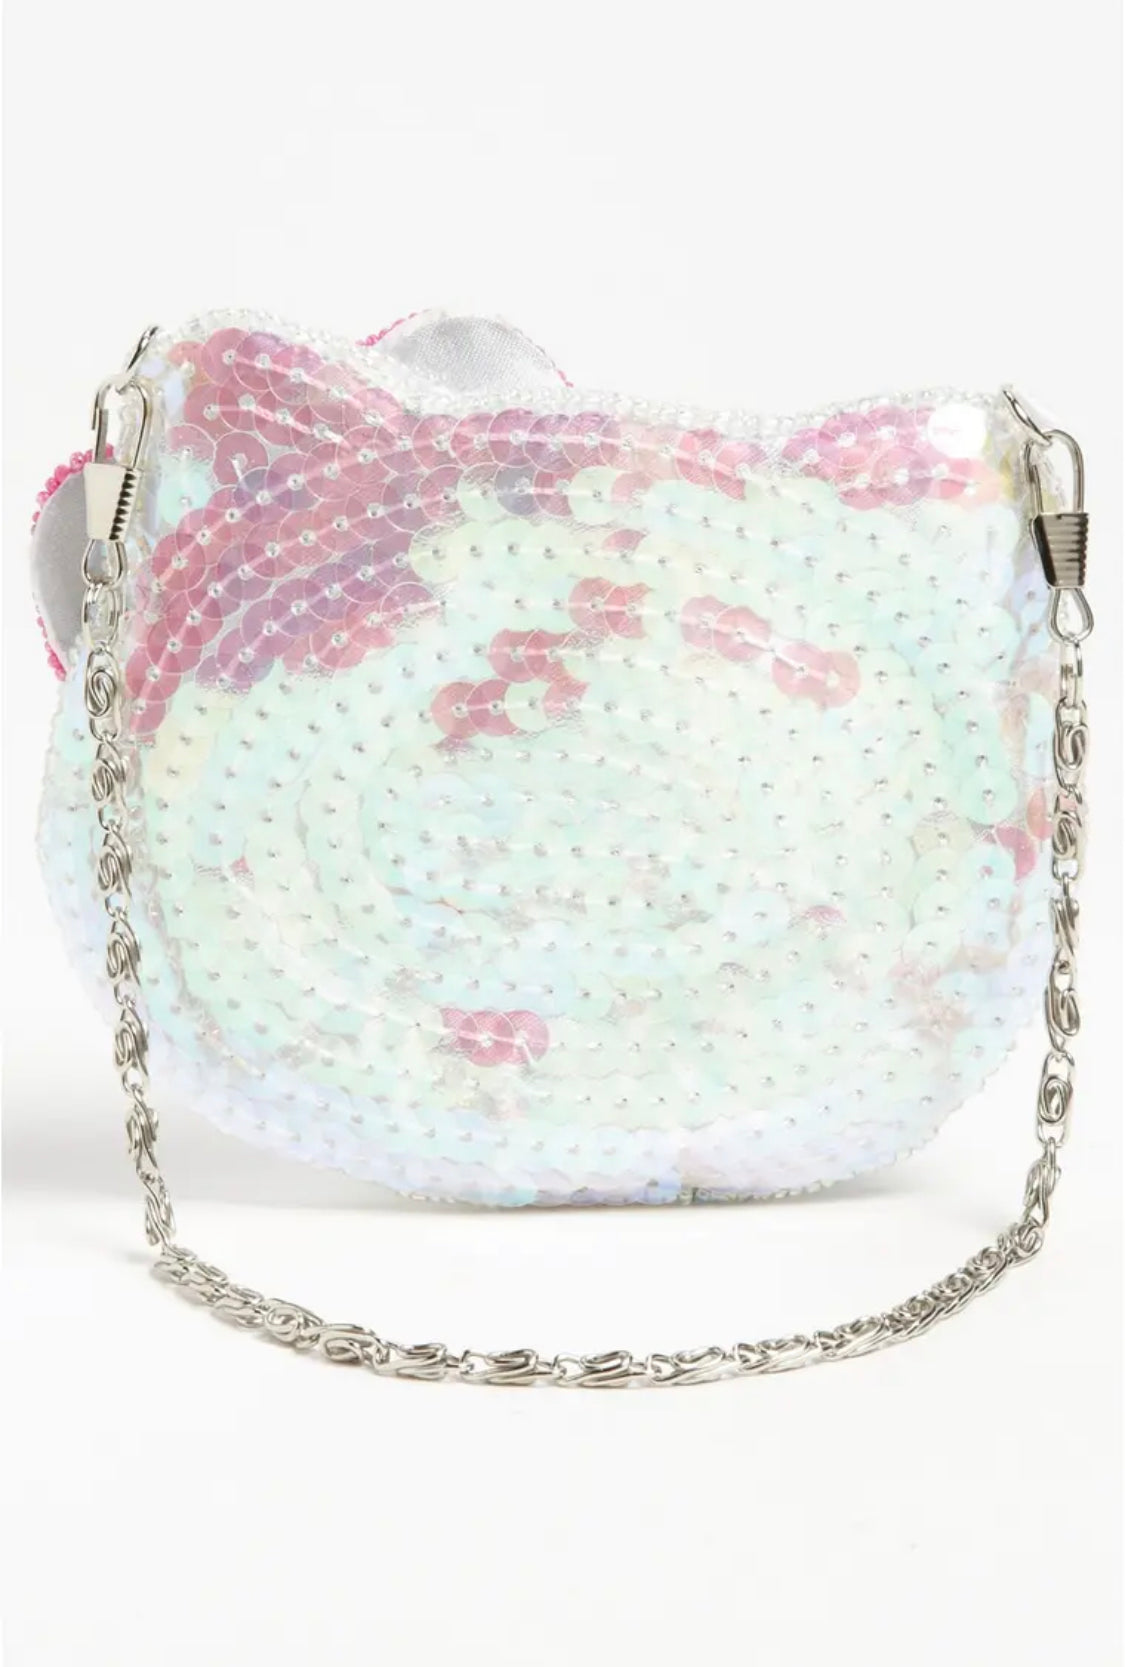 NWT Sanrio Hello Kitty Sequin Wristlet Wallet Bag Coin Purse Pink